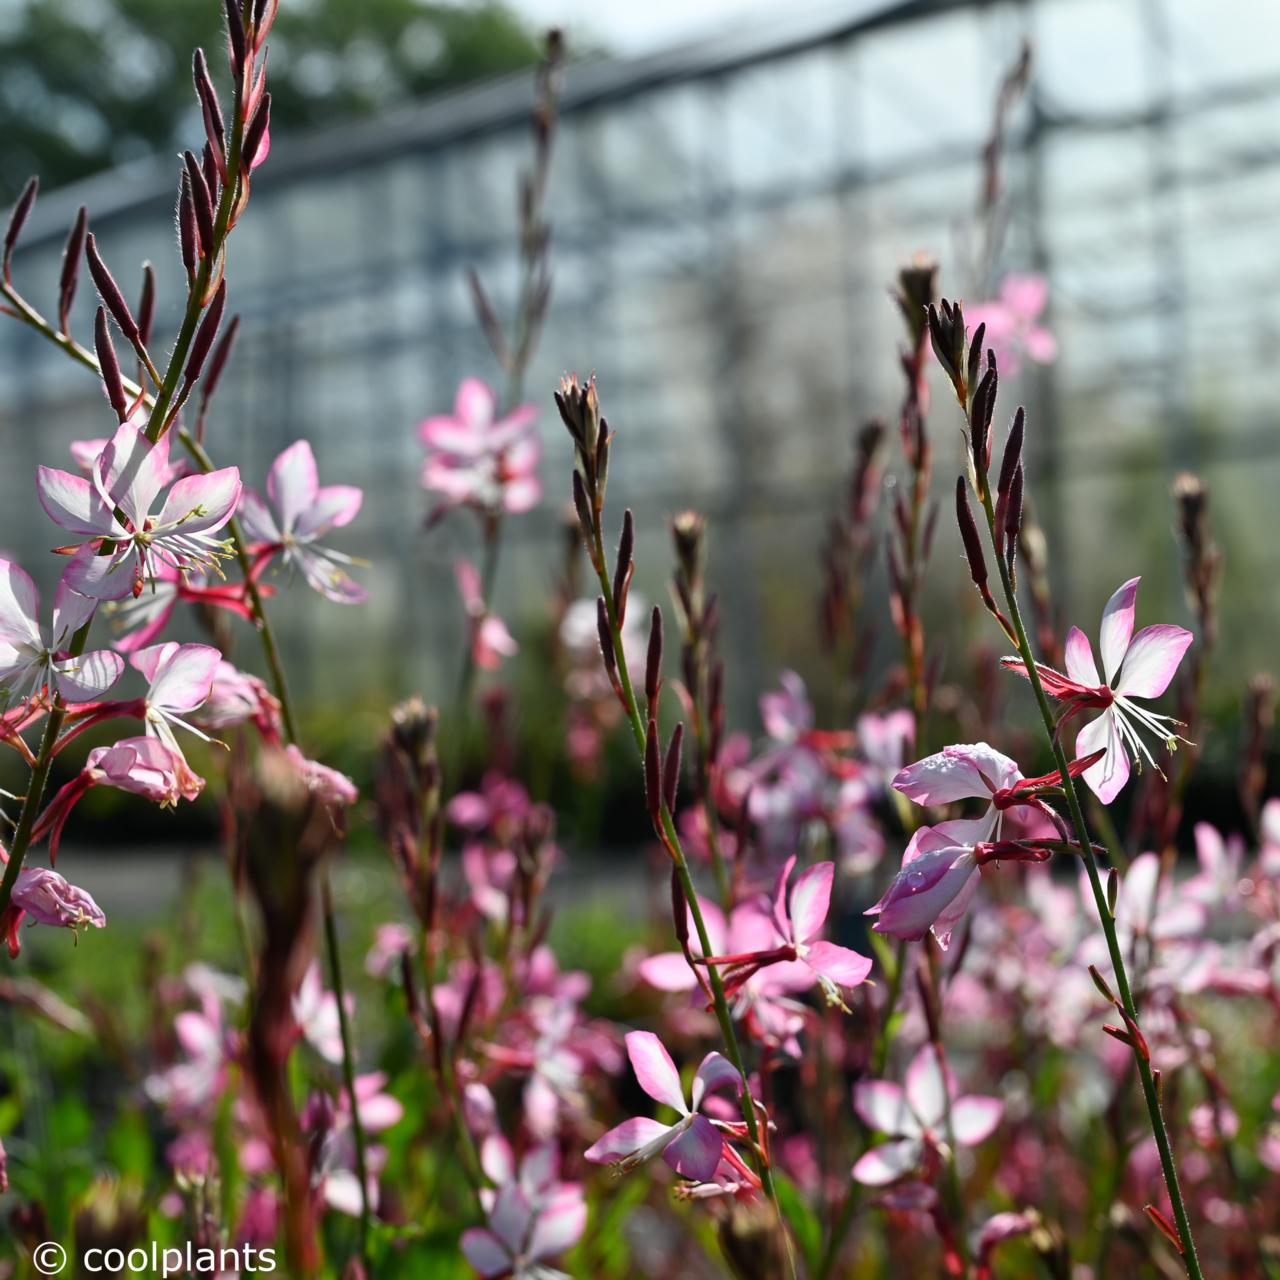 gaura lindheimeri 'rosy jane' - kaufen sie pflanzen bei coolplants